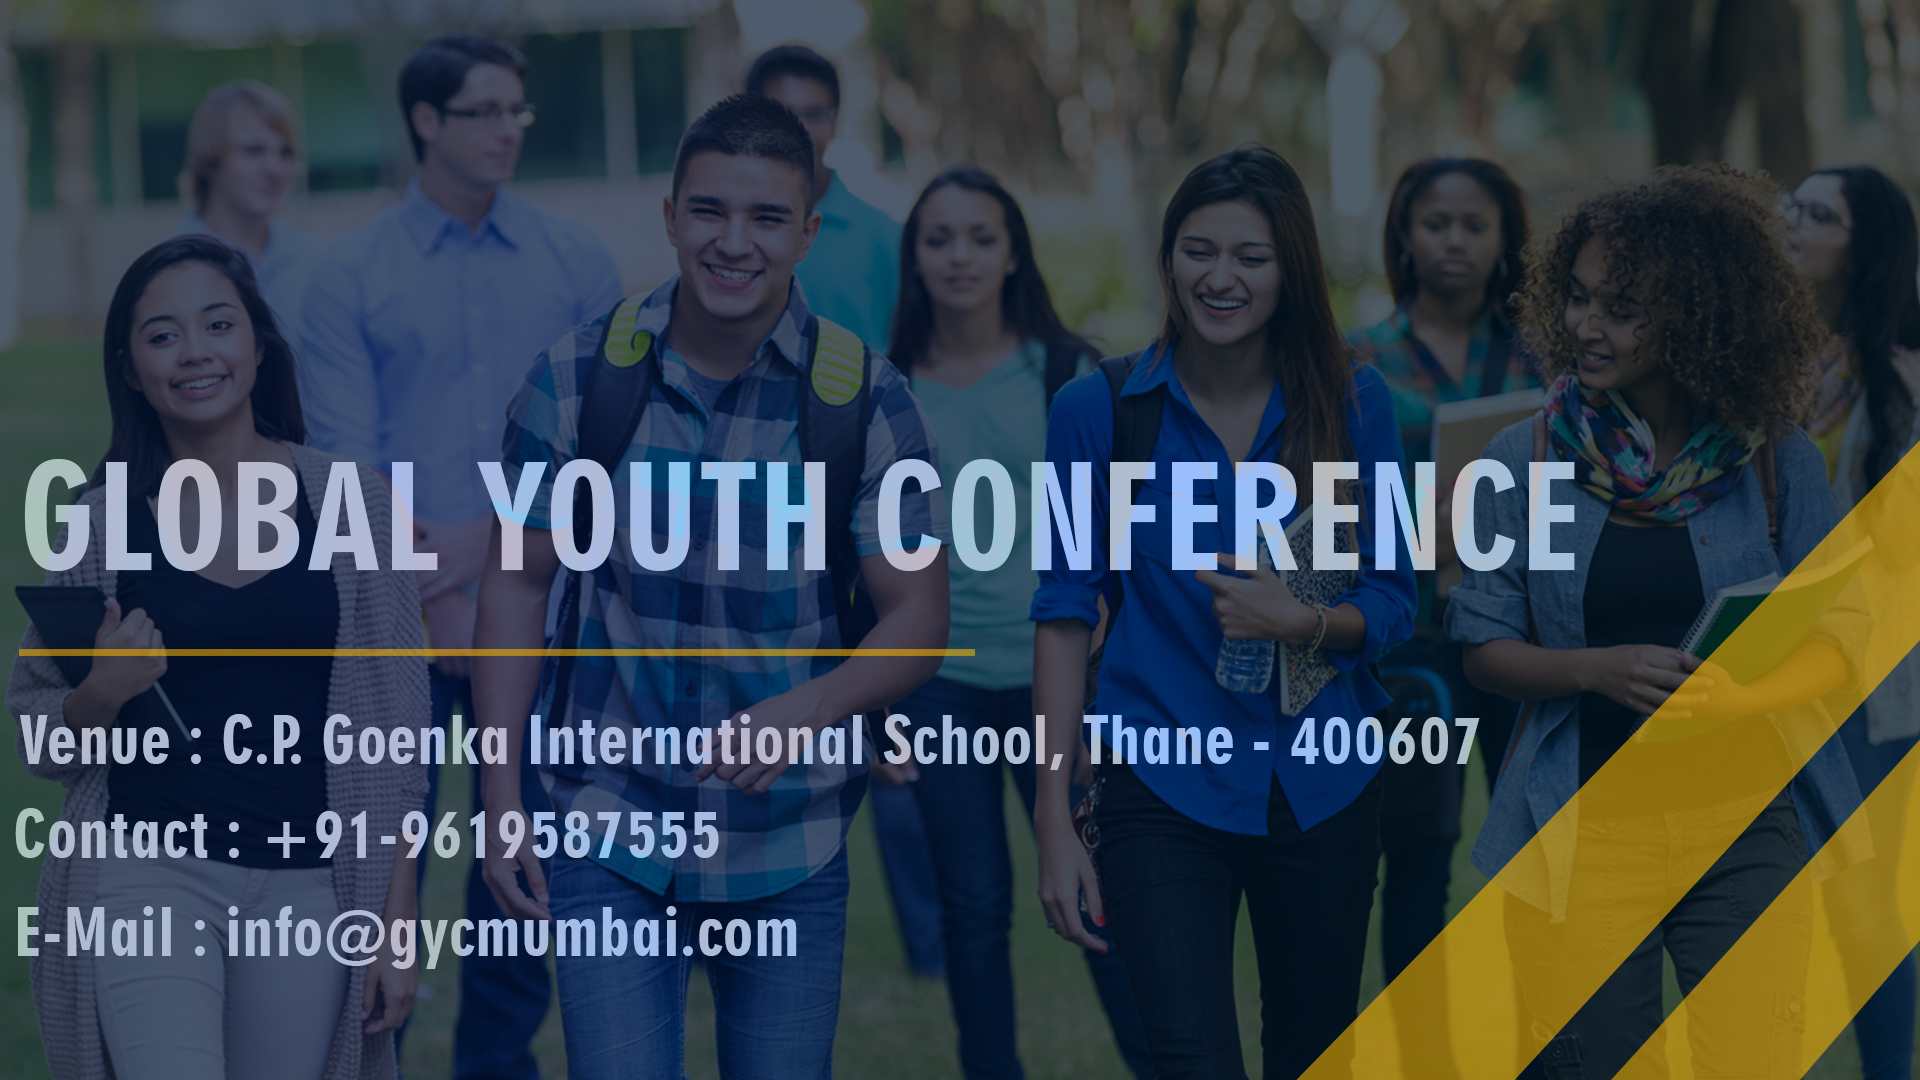 Global Youth Conference 2019 - Mumbai Chapter, Thane, Maharashtra, India